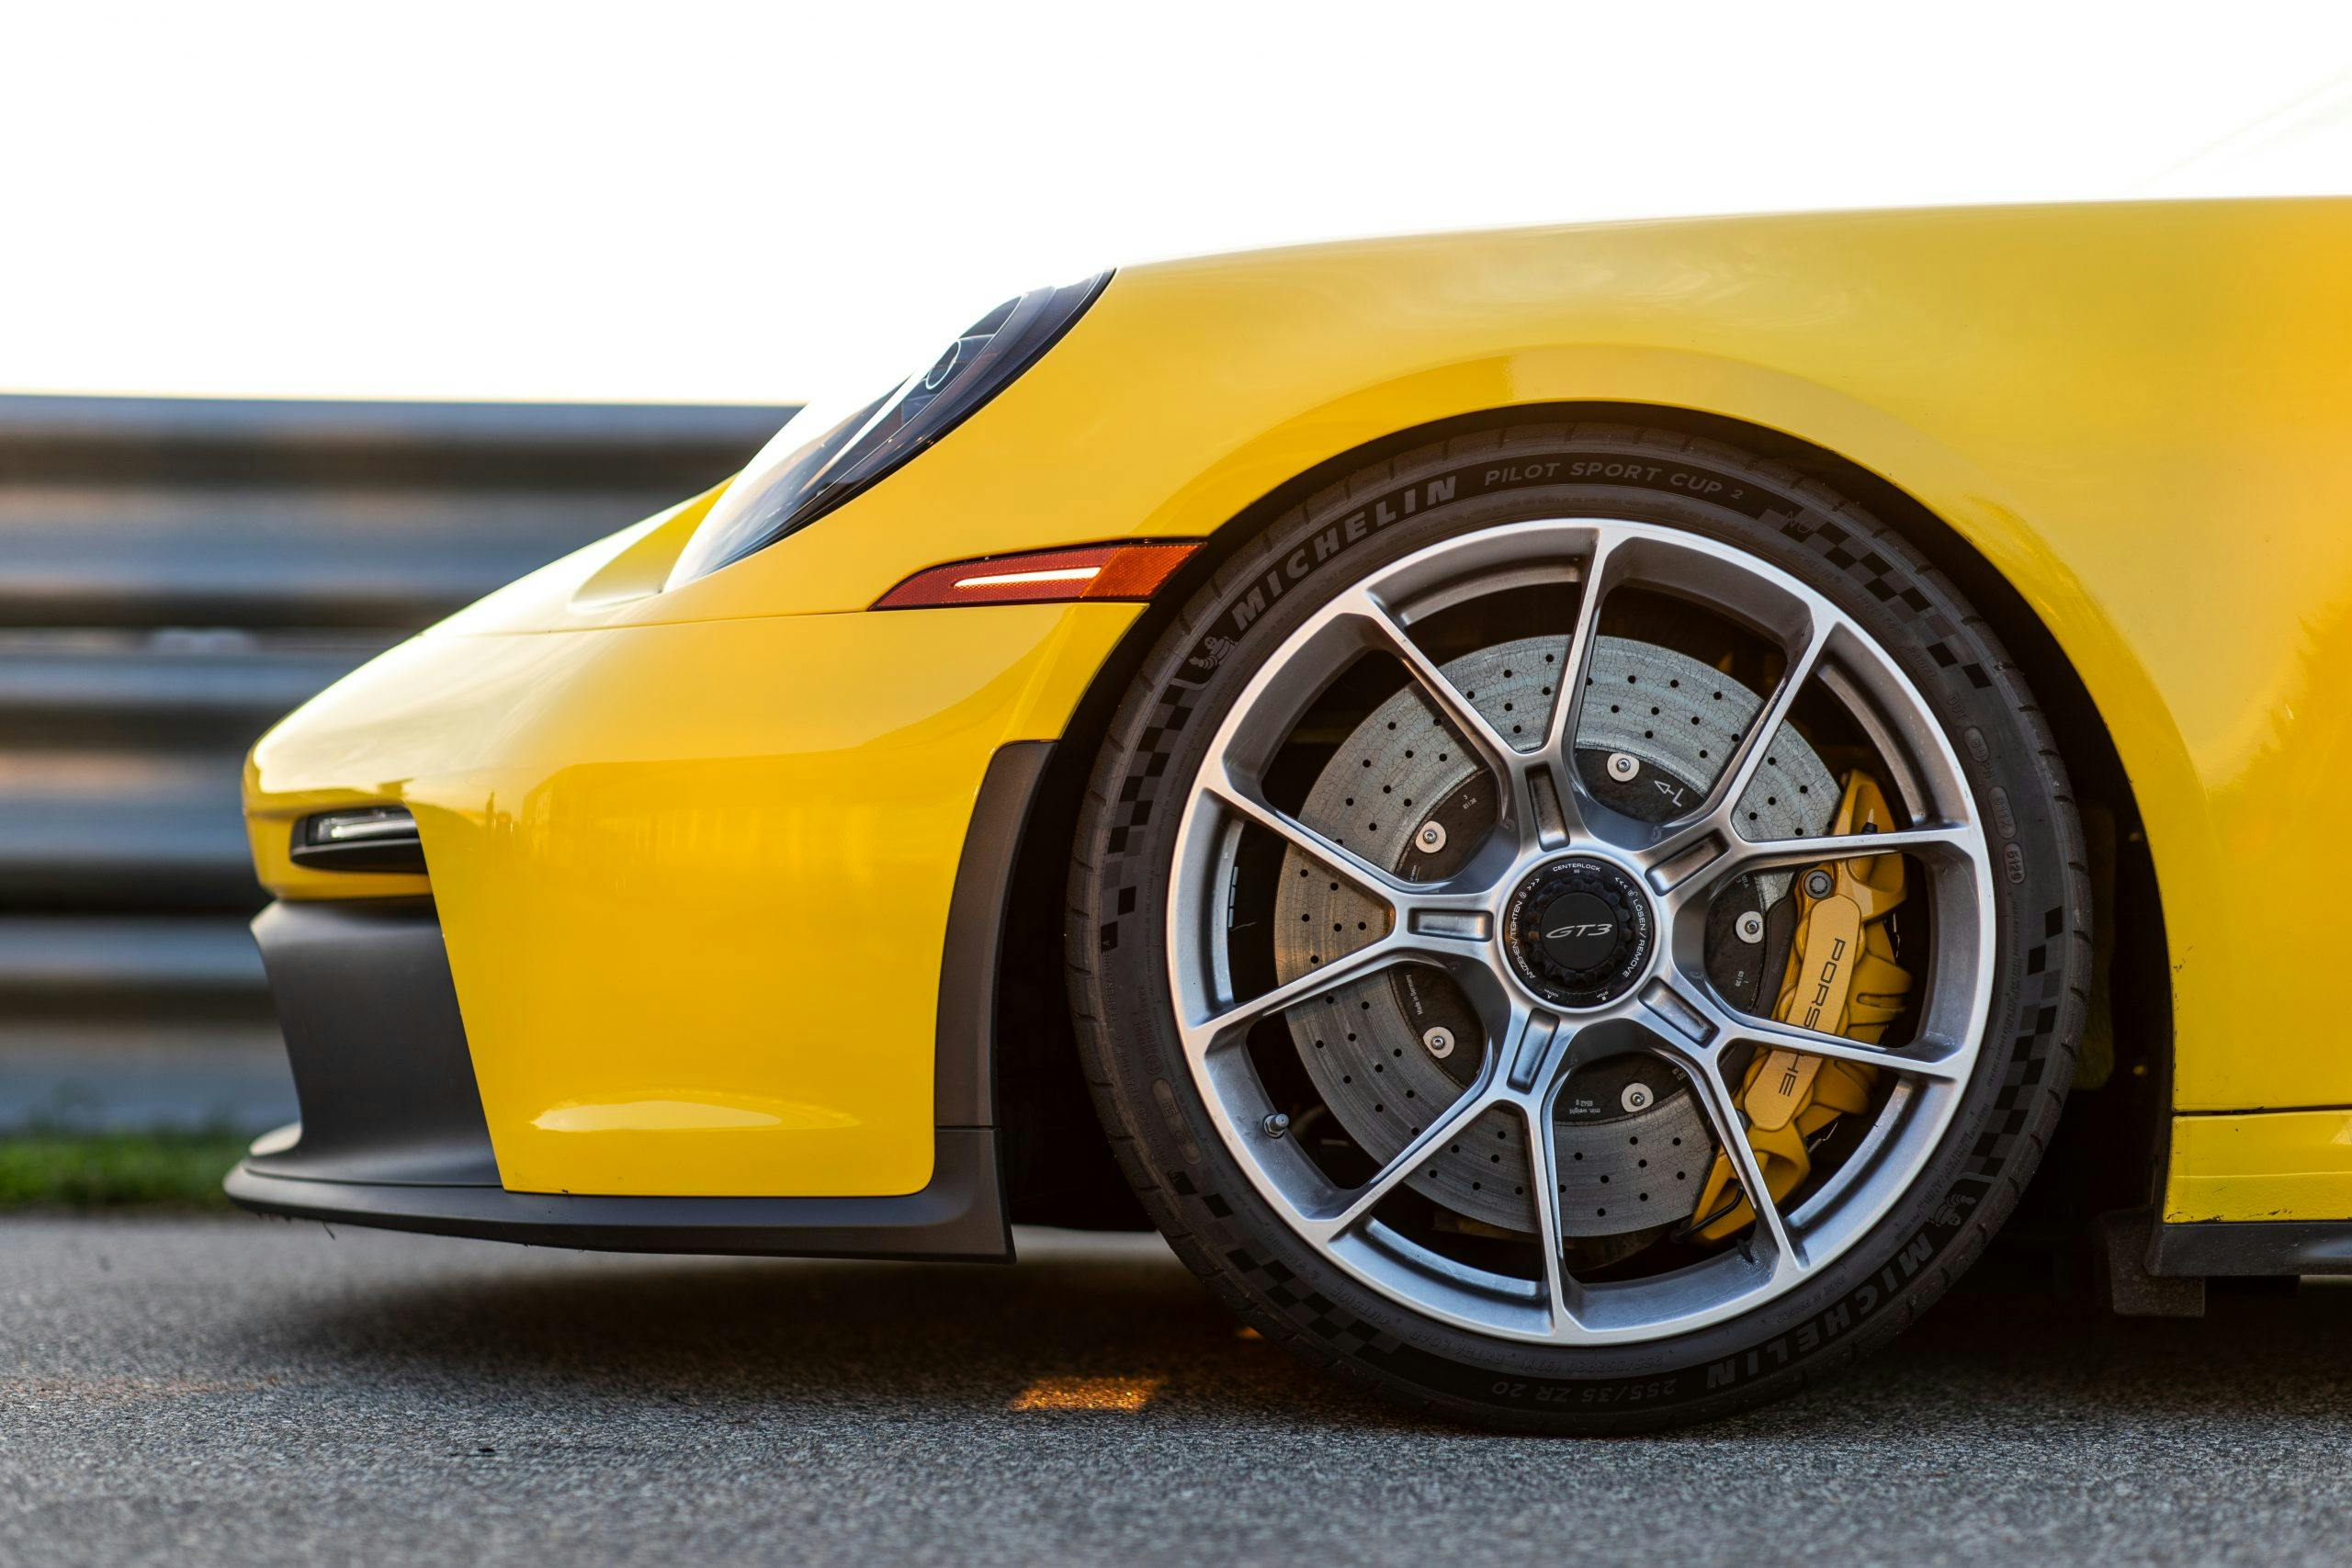 Porsche GT3 front end wheel brakes tire closeup